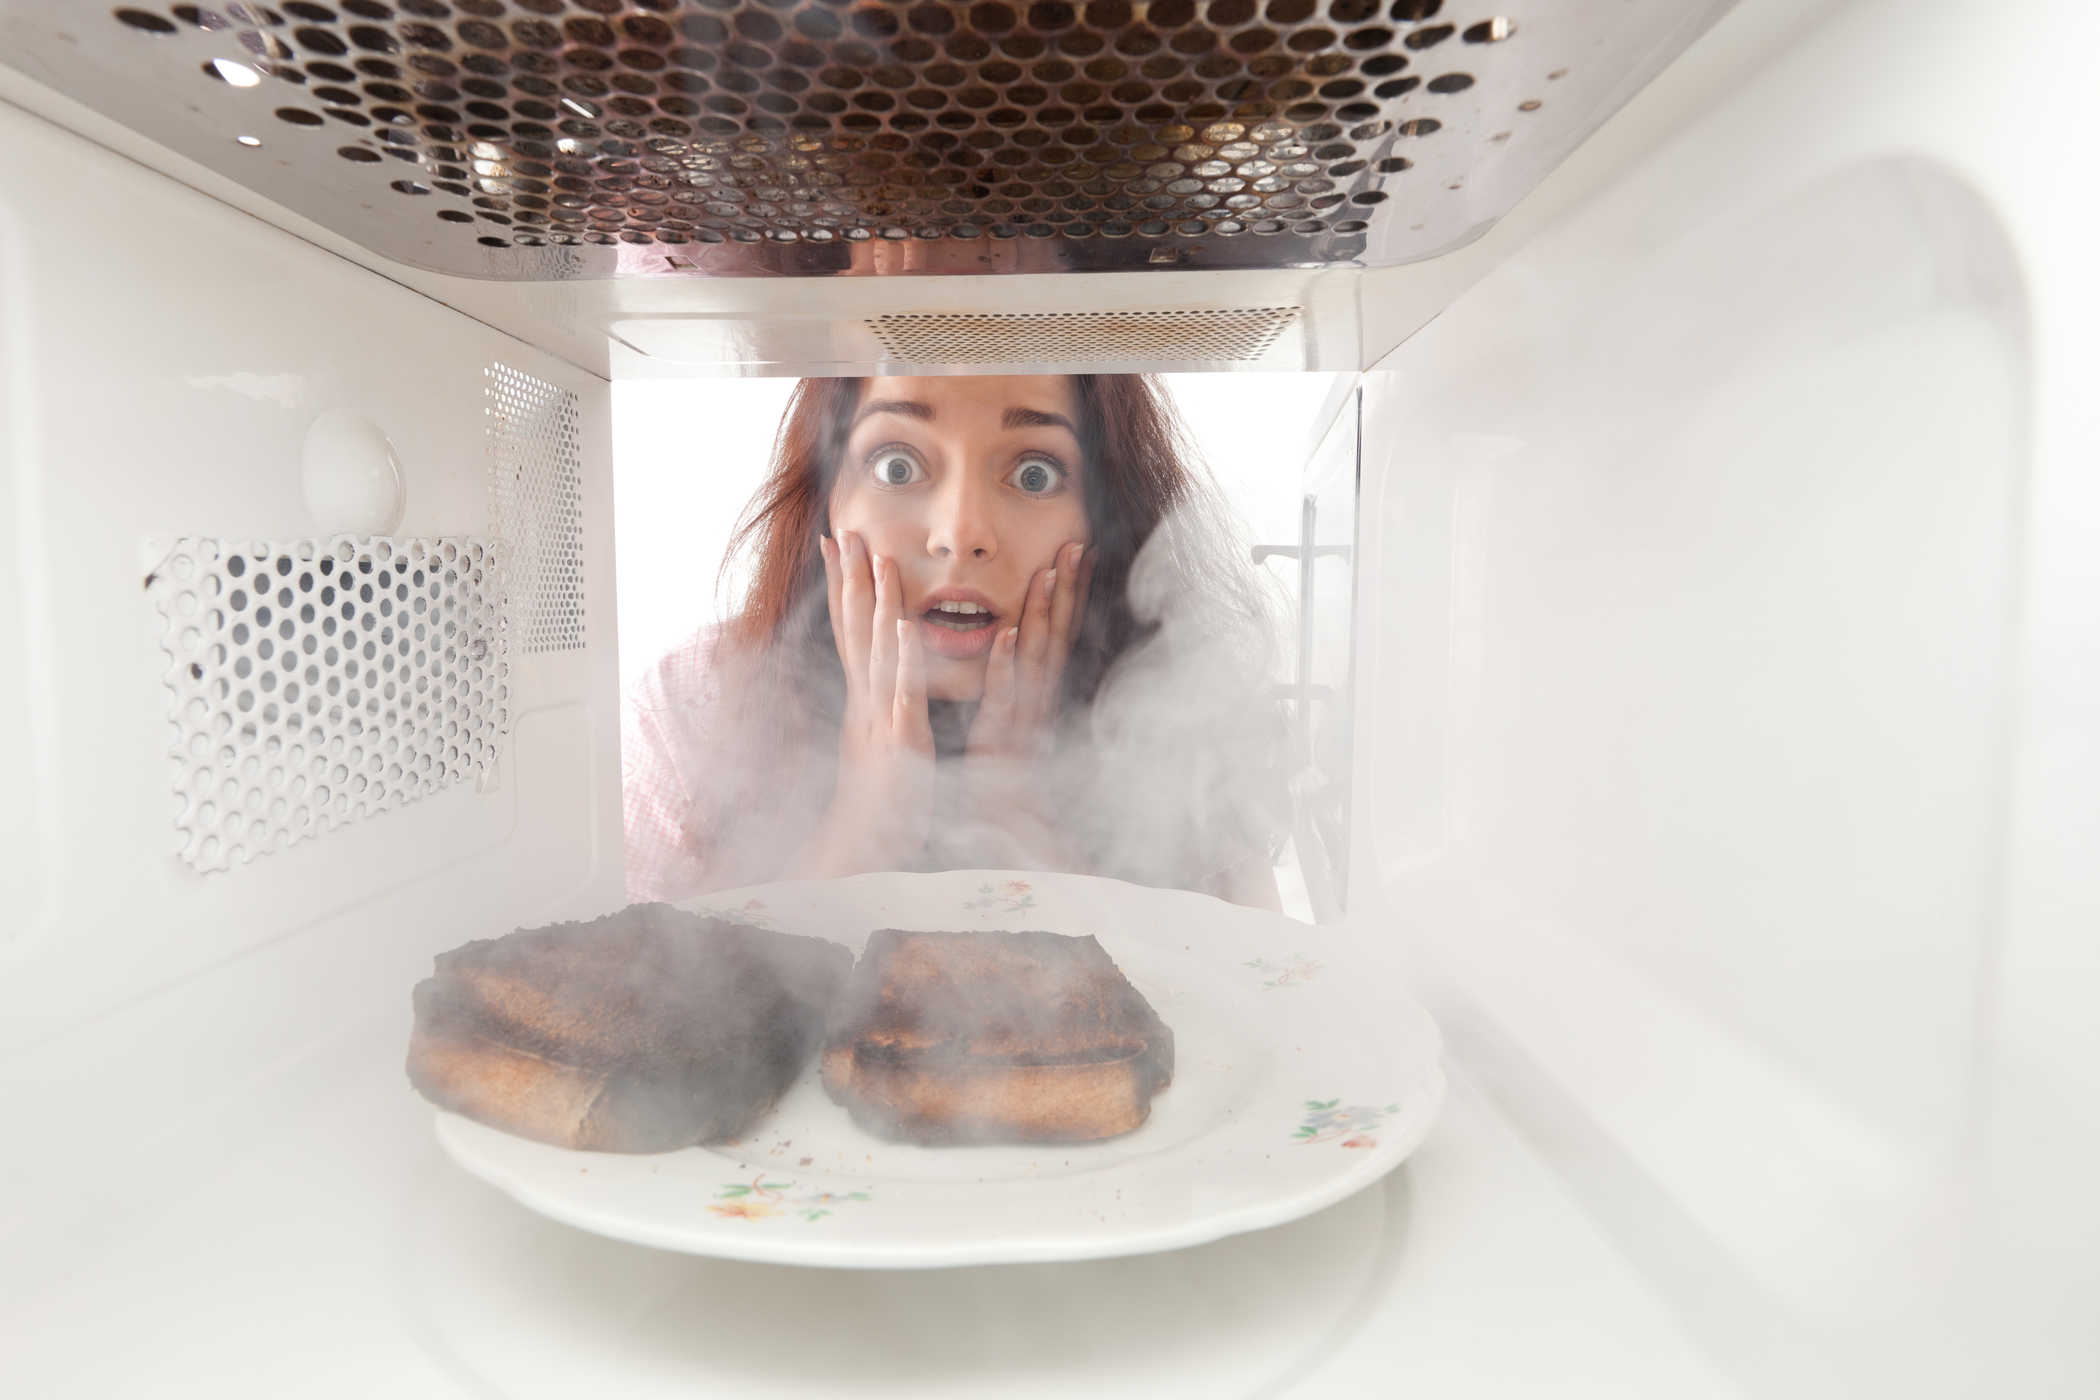 Apakah Radiasi dari Microwave Berbahaya bagi Kesehatan?